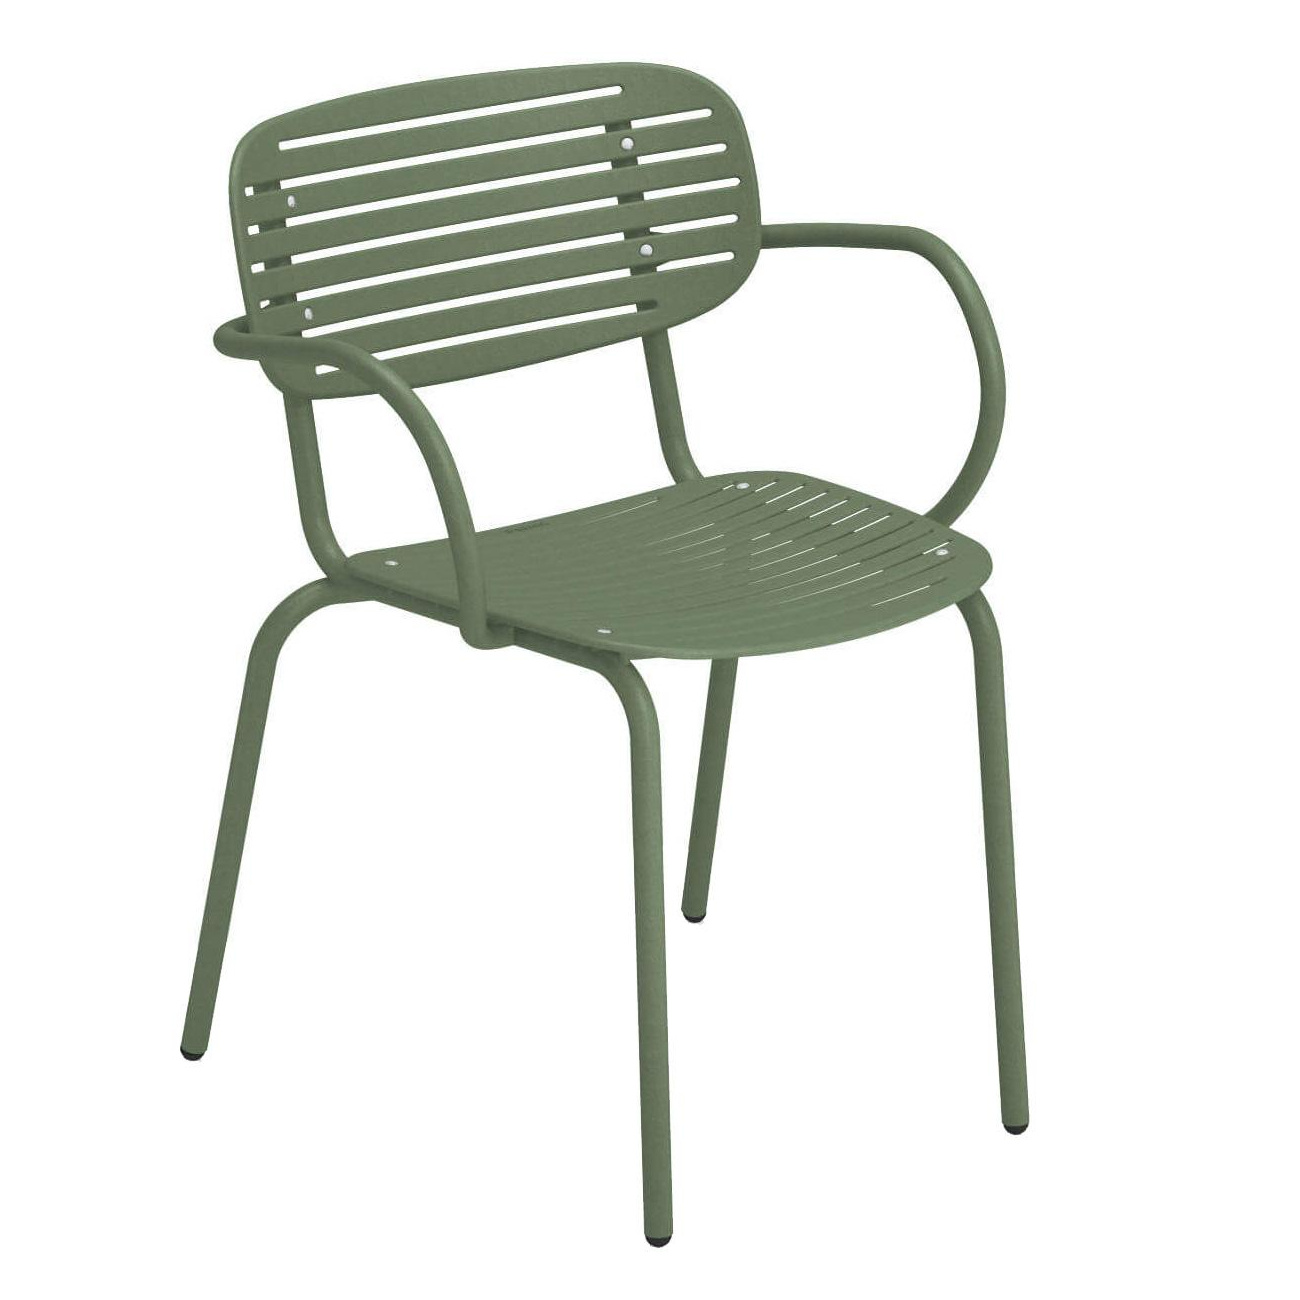 emu - Chaise de jardin avec accoudoirs Mom - vert militaire/peint par poudrage/LxHxP 58,5x65x56cm